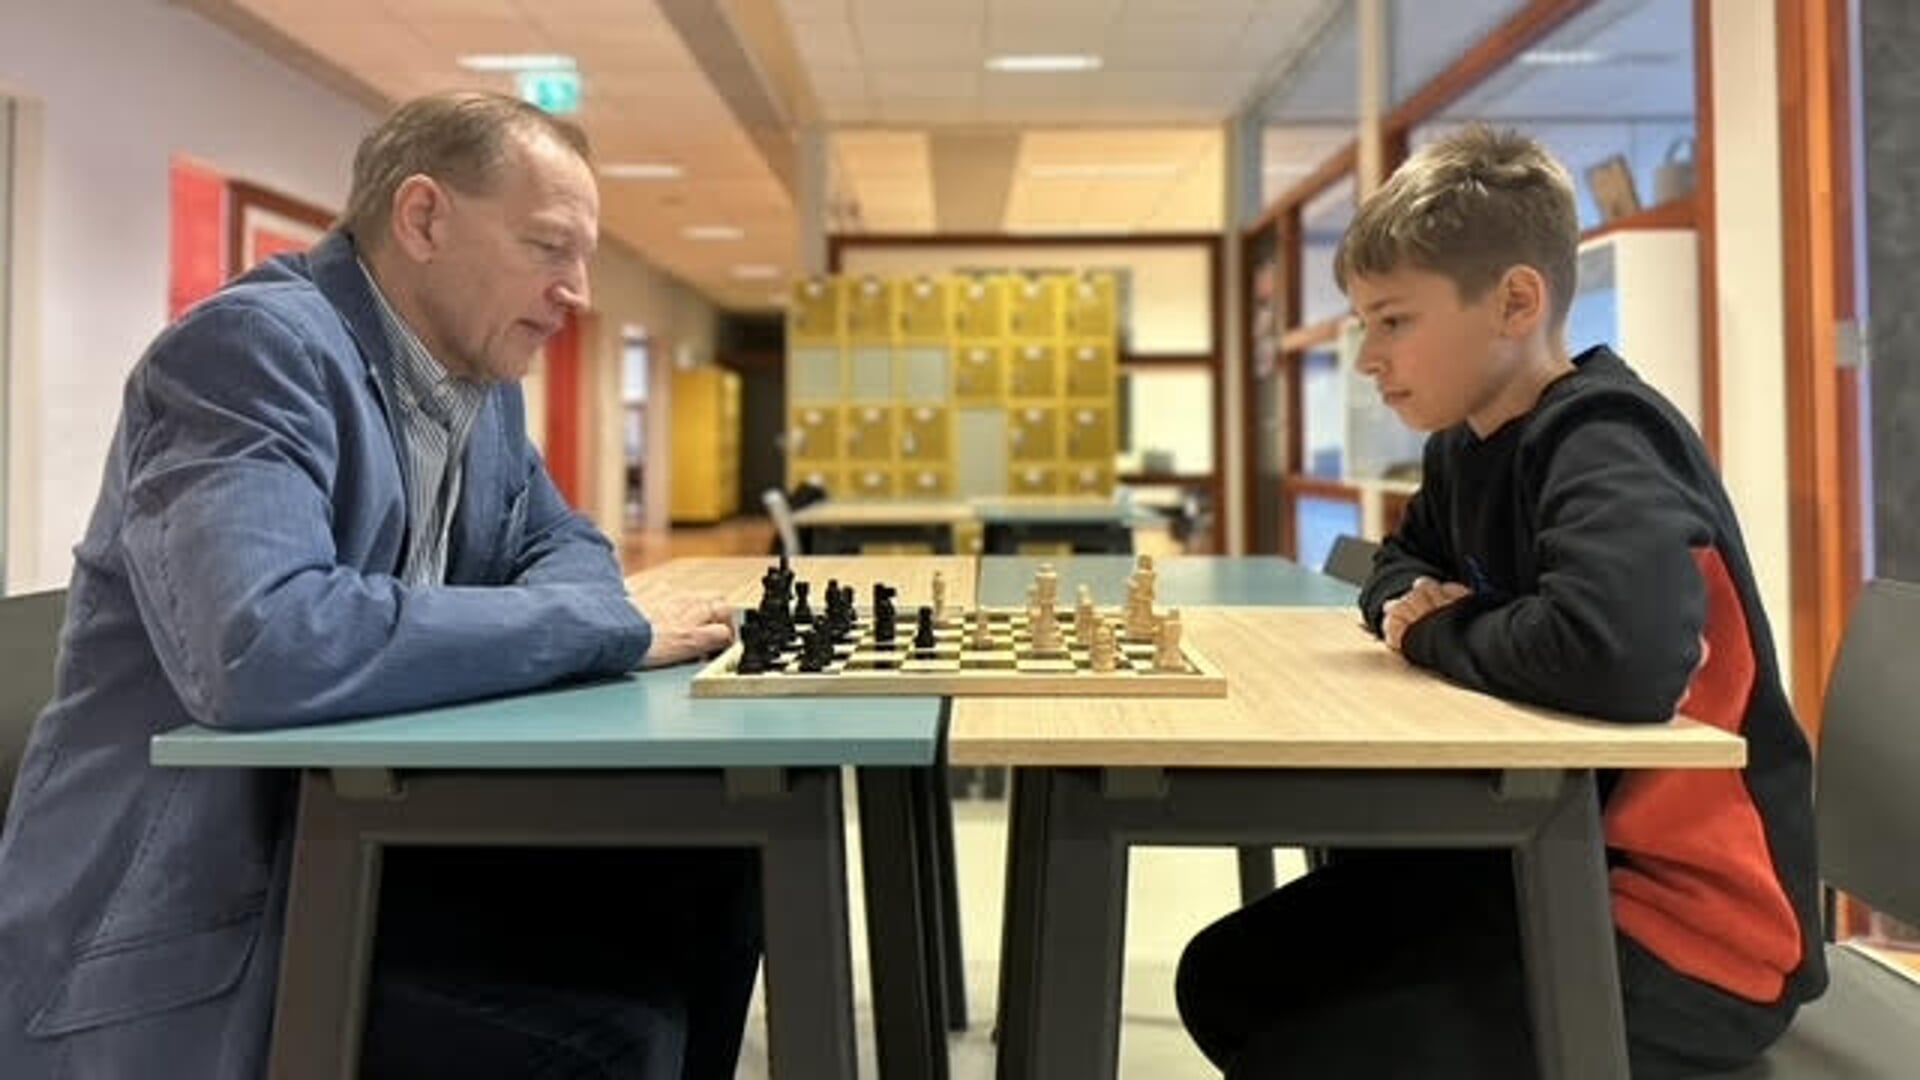 Patric Ciulei (l) schaakjeugdkampioen van Roemenië, speelt tegen zijn docent Marco de Bruijn (r). 